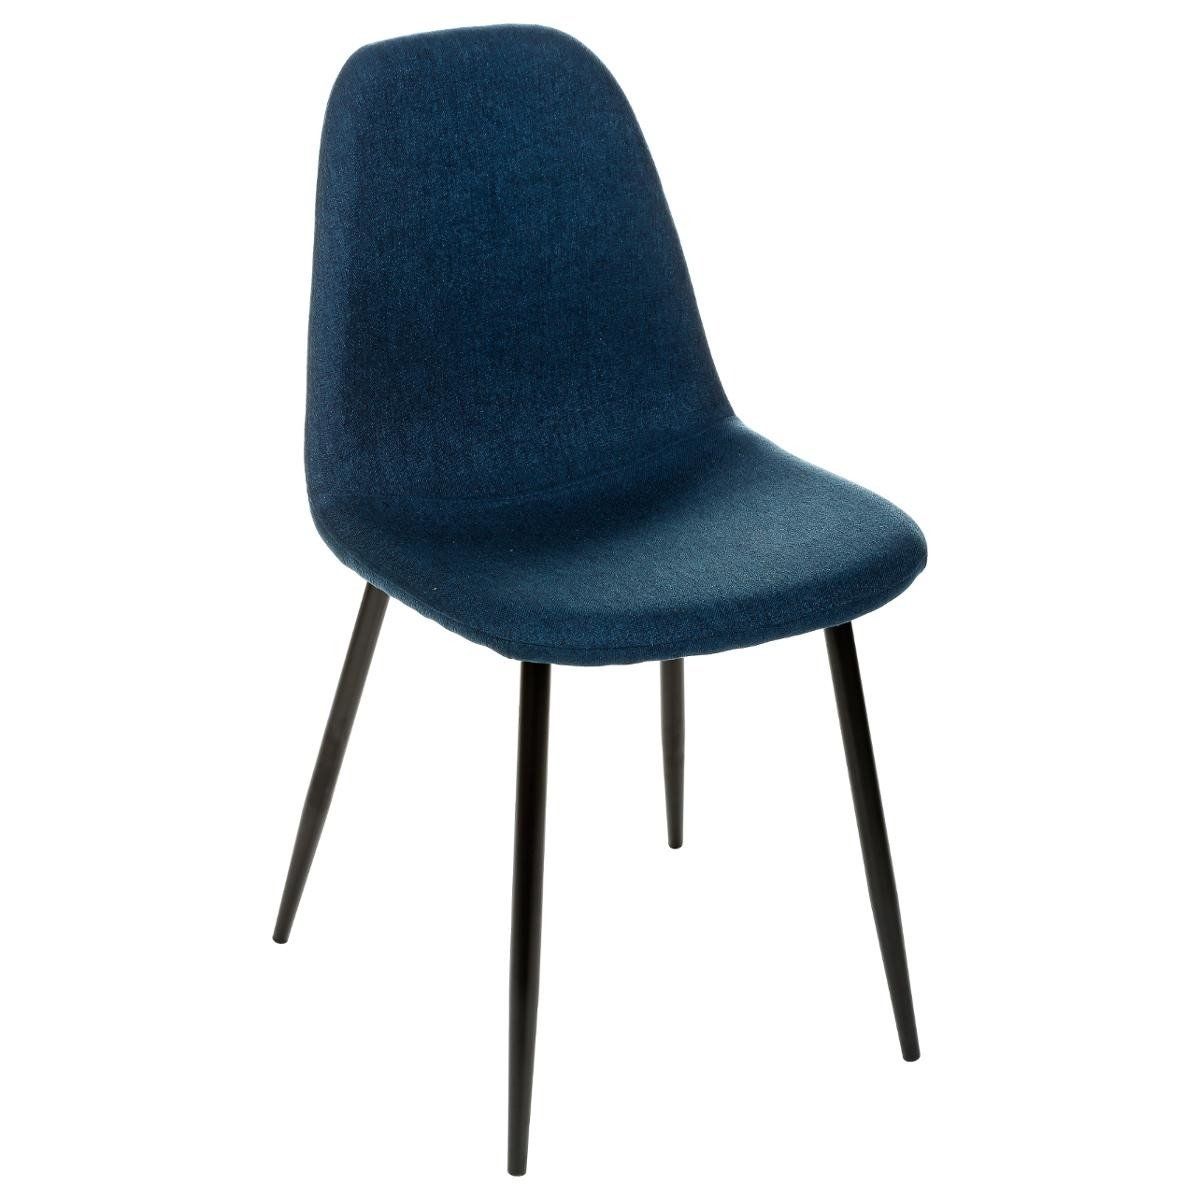 Atmosphera NAVY čalouněná židle pro jídelnu, mořská barva - EMAKO.CZ s.r.o.